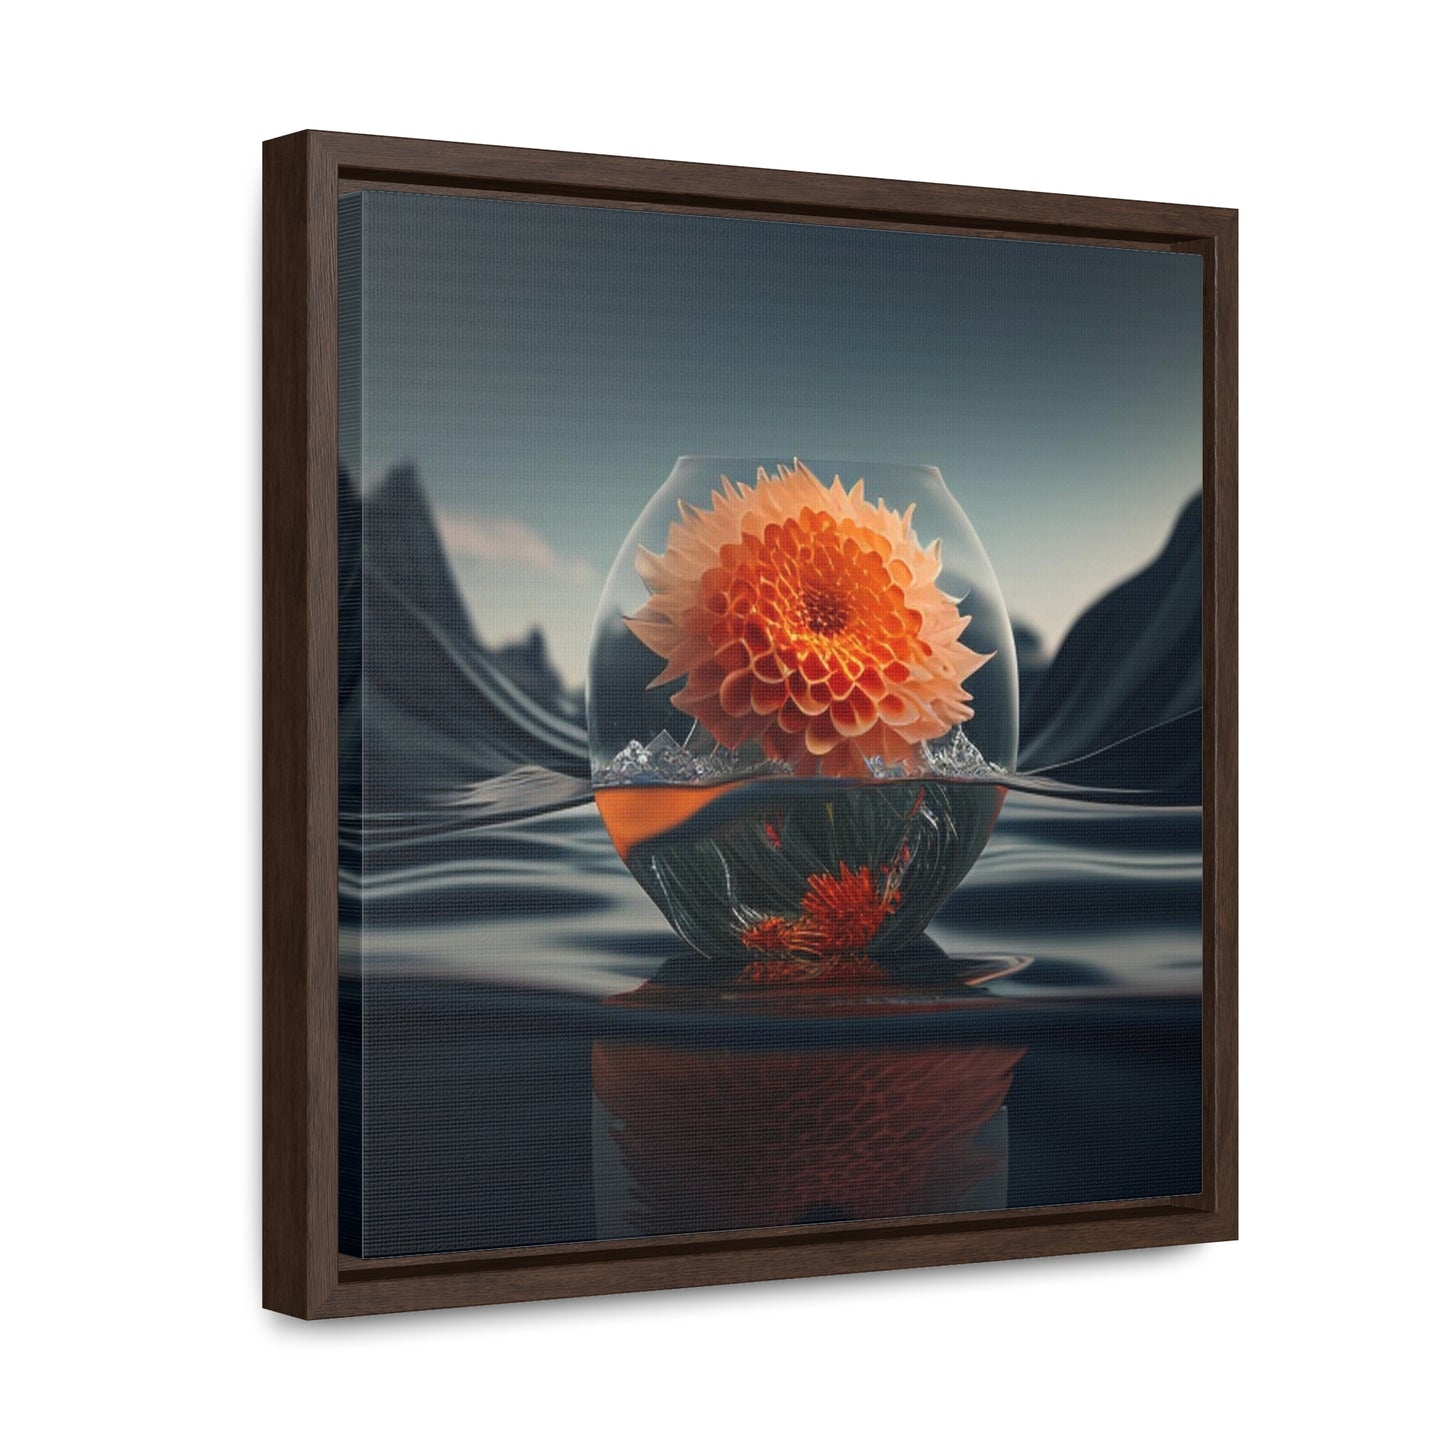 Gallery Canvas Wraps, Square Frame Dahlia Orange 3